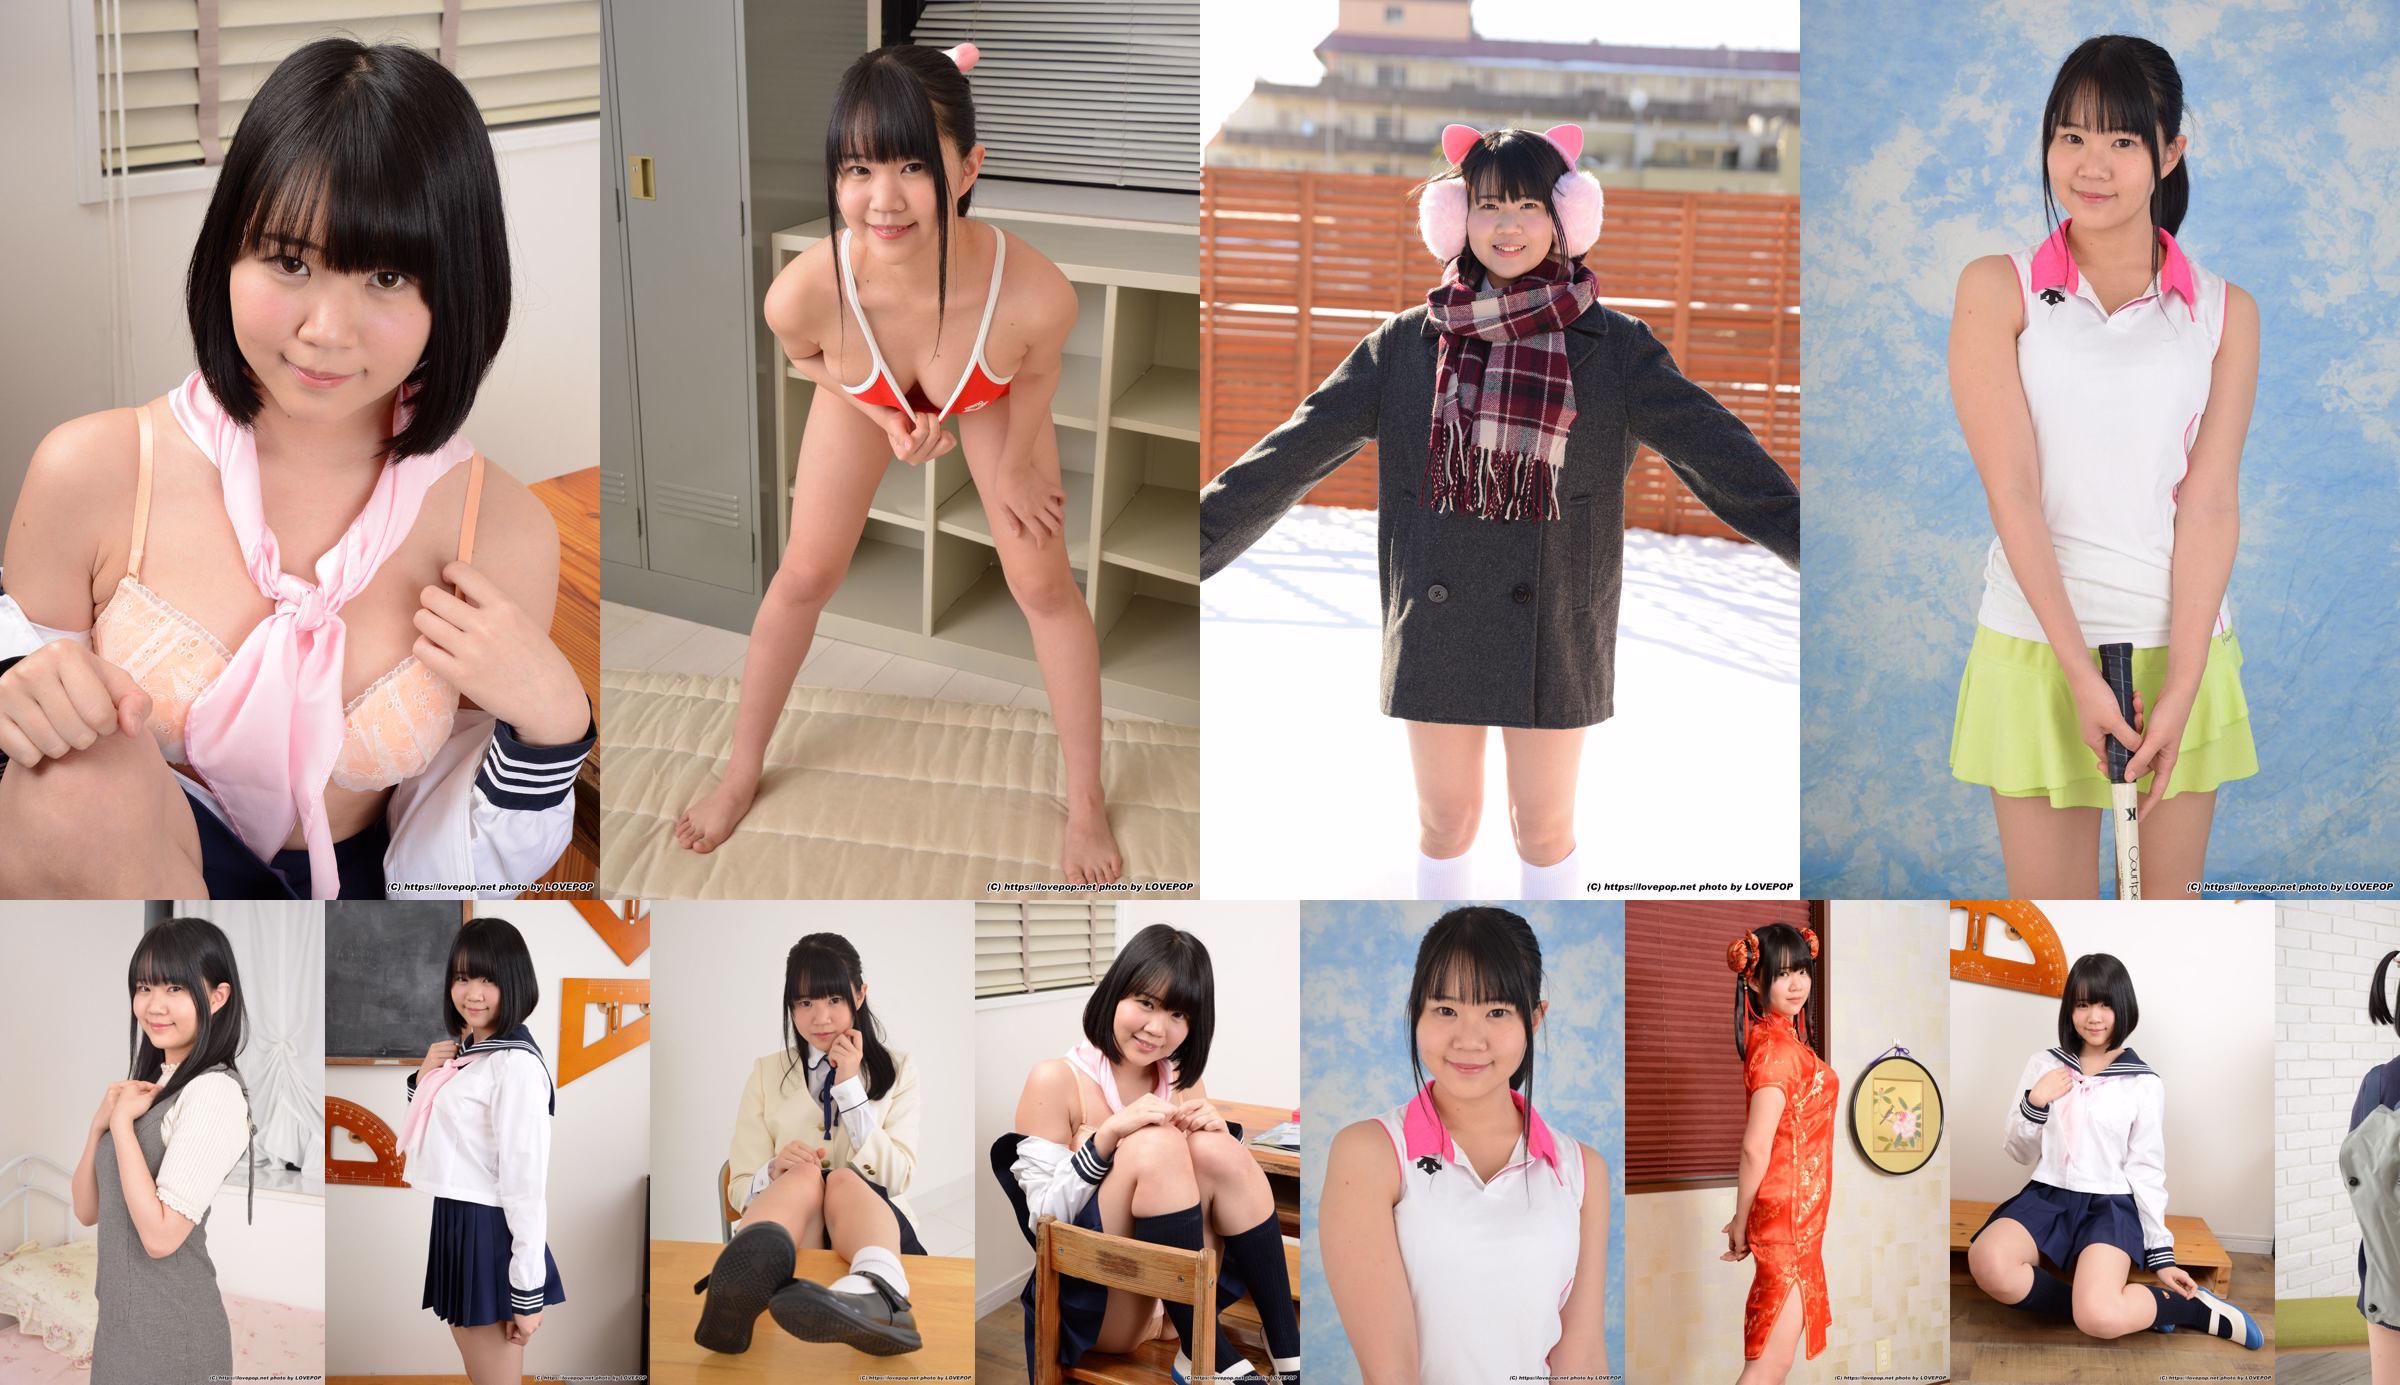 [LOVEPOP] Hinata Suzumori Suzumori Hinata / Suzumori ひなた Photoset 09 No.1d3b1d Page 1